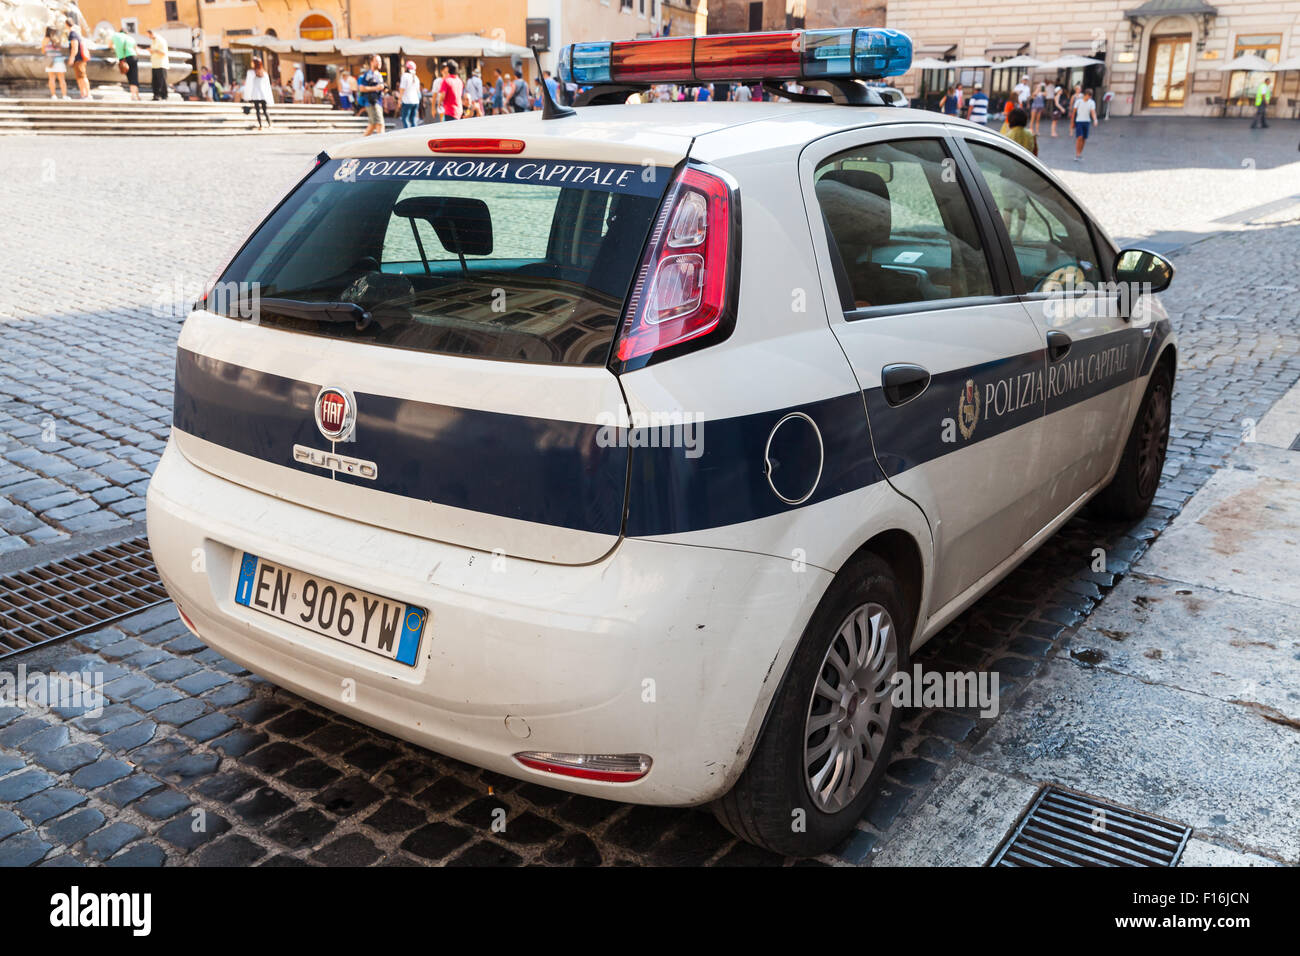 Rome, Italie - 8 août 2015 : Blanc Fiat Punto voiture de police est garée sur le bord de la ville, vue de dos Banque D'Images